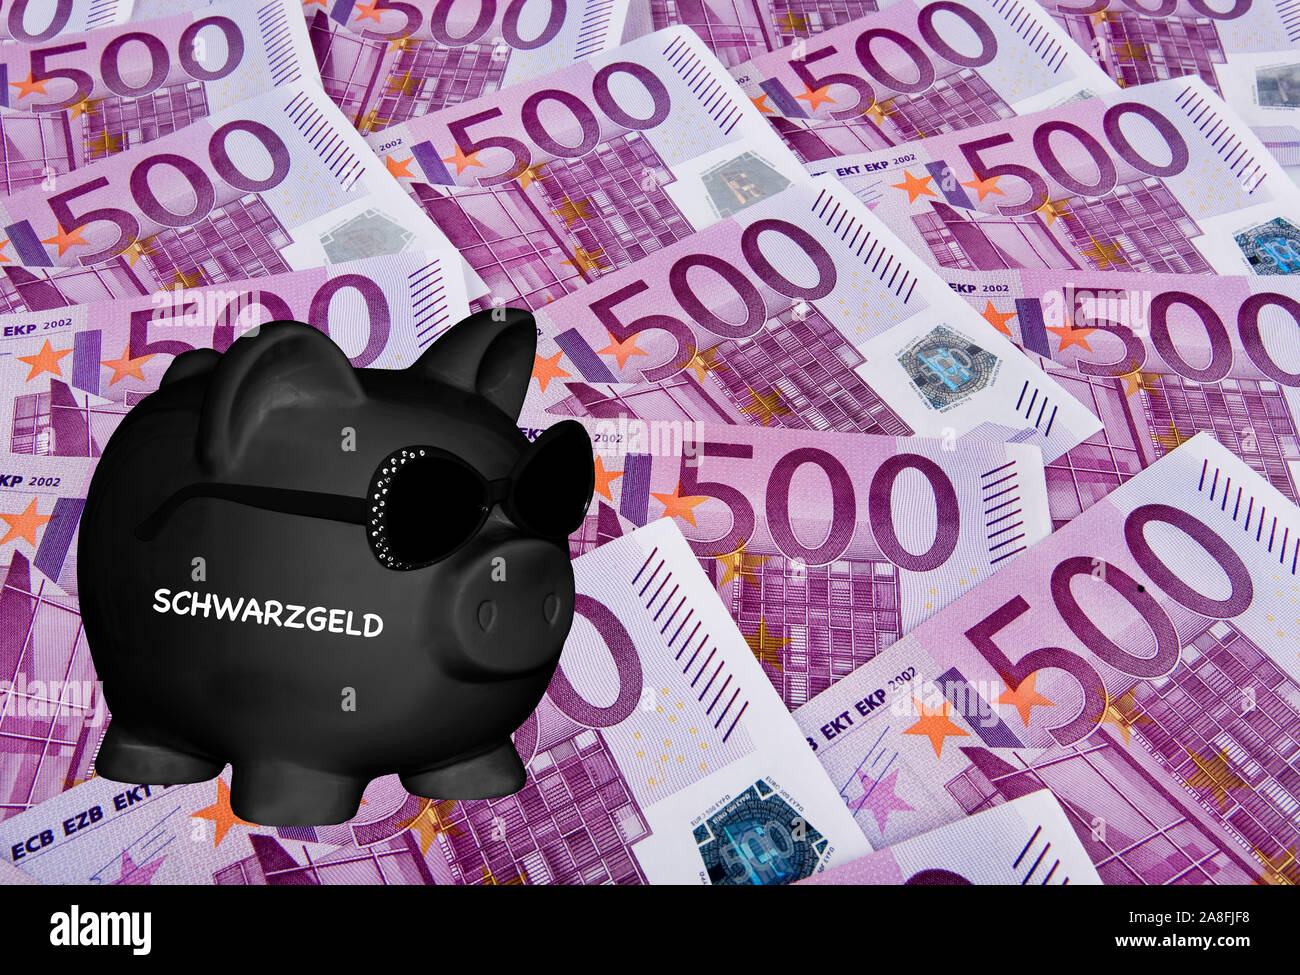 Schwarzes Sparschwein, Sparen, Vorsorge, Aufdruck: Schwarzgeld, Steuerhinterziehung, Stock Photo